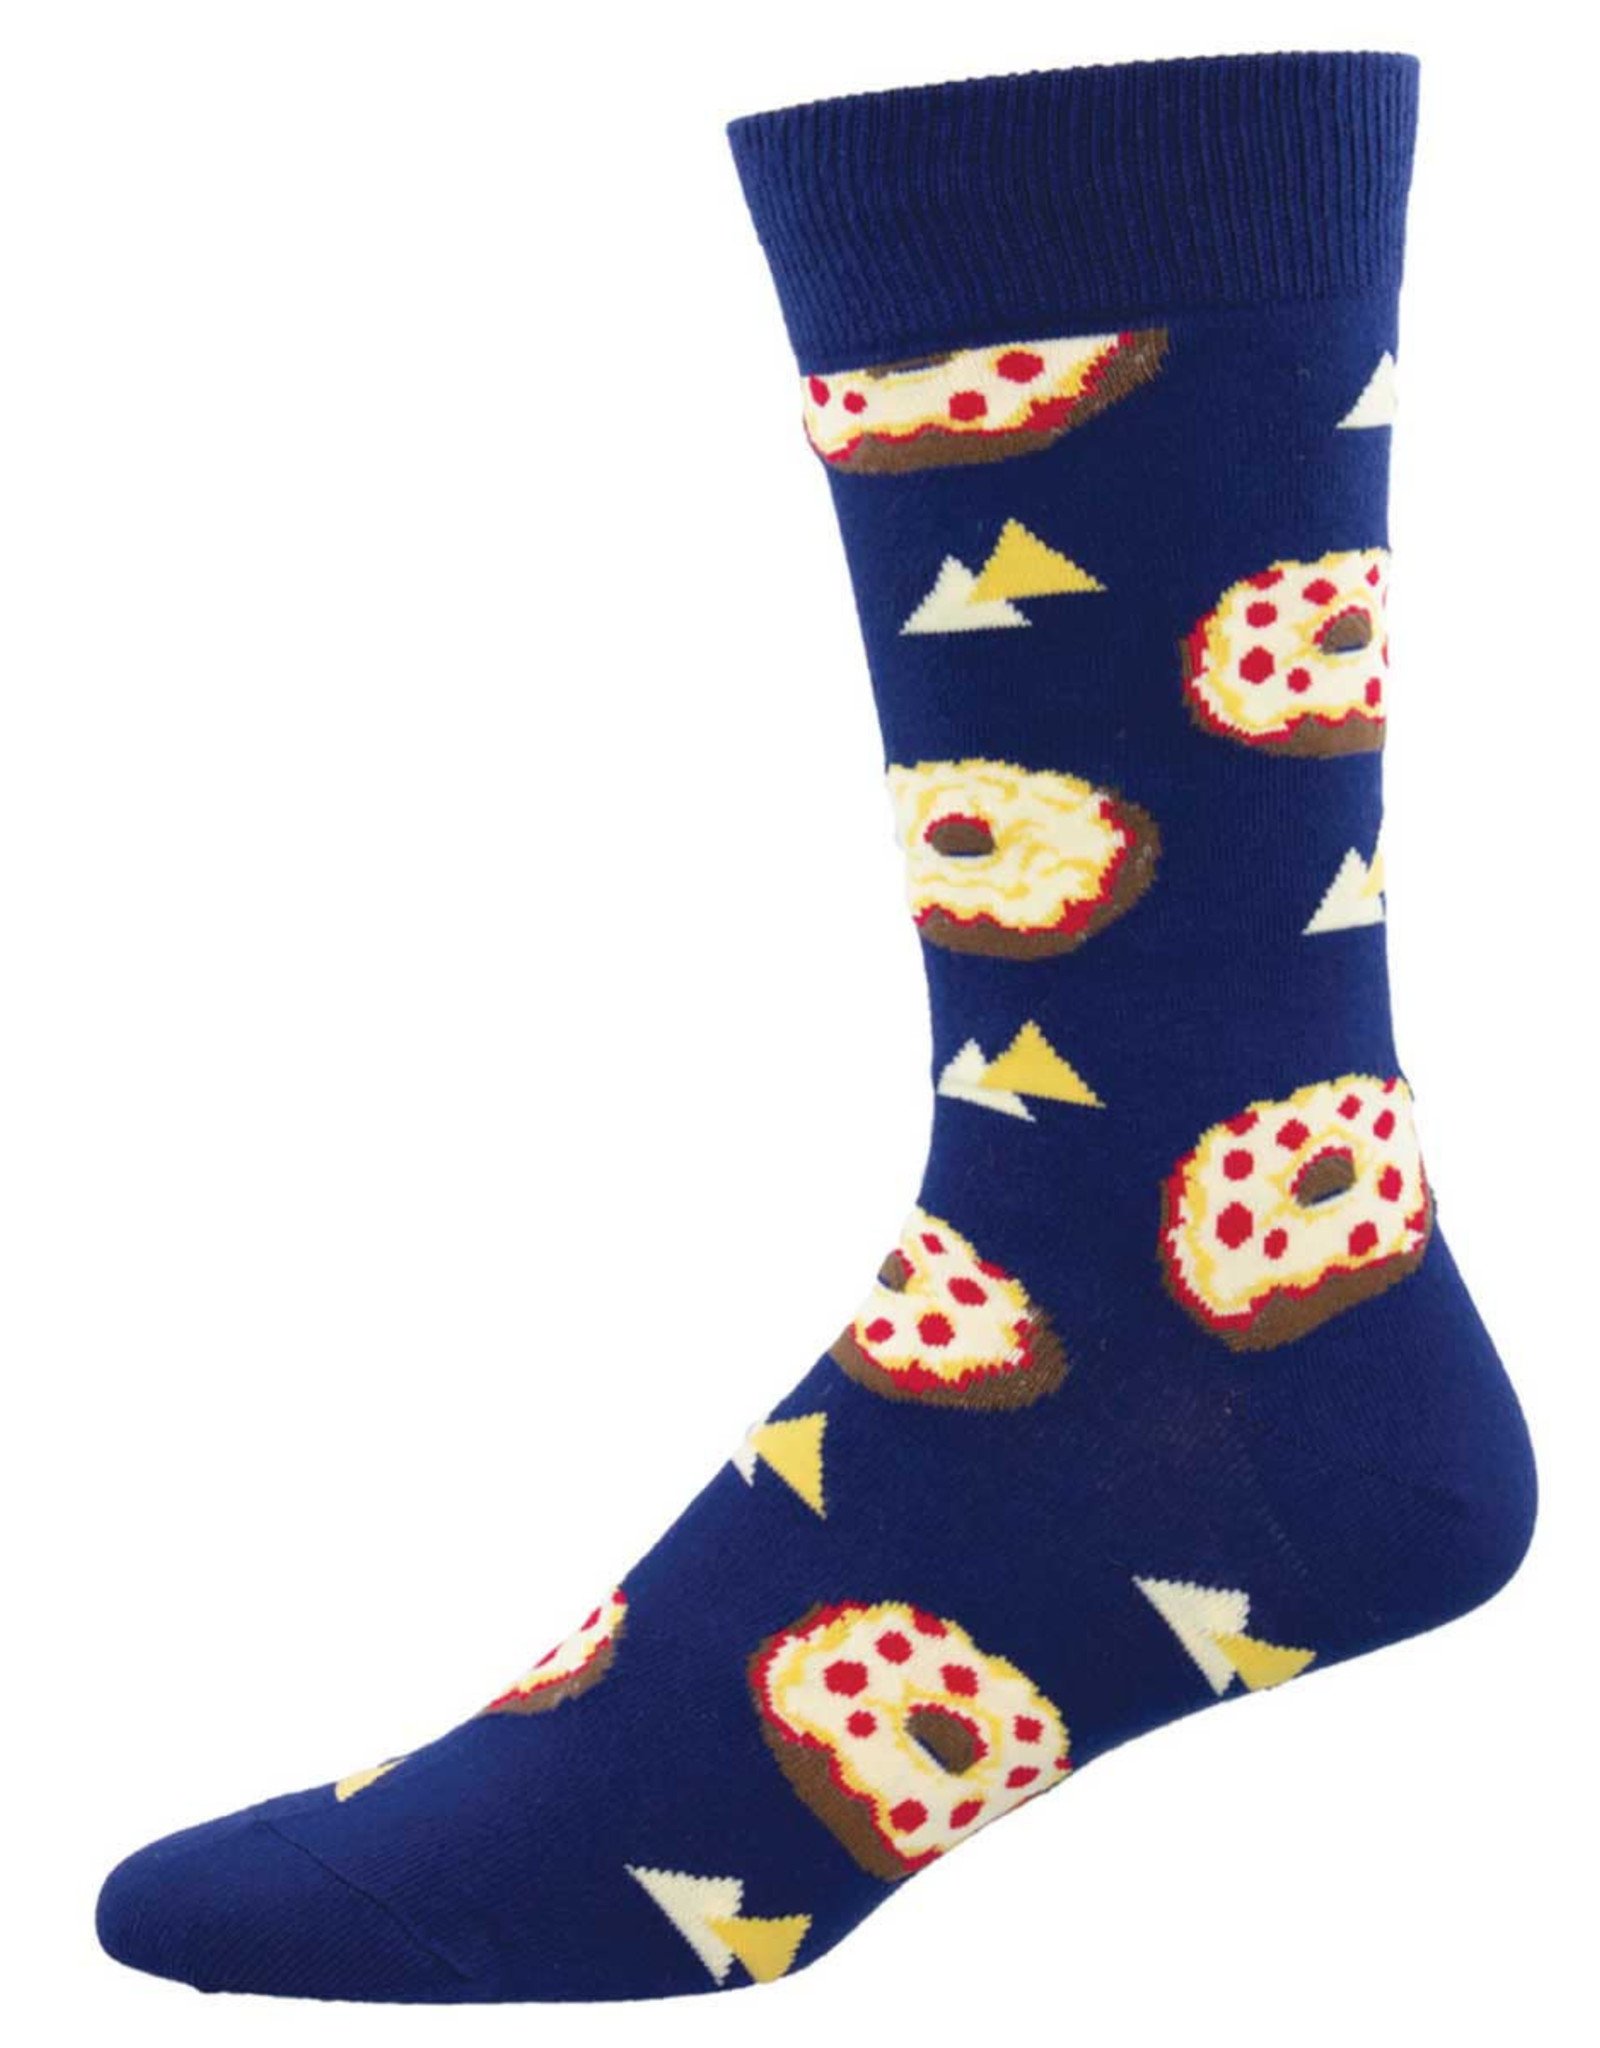 Socksmith Men's Pizza Bagel Navy Socks